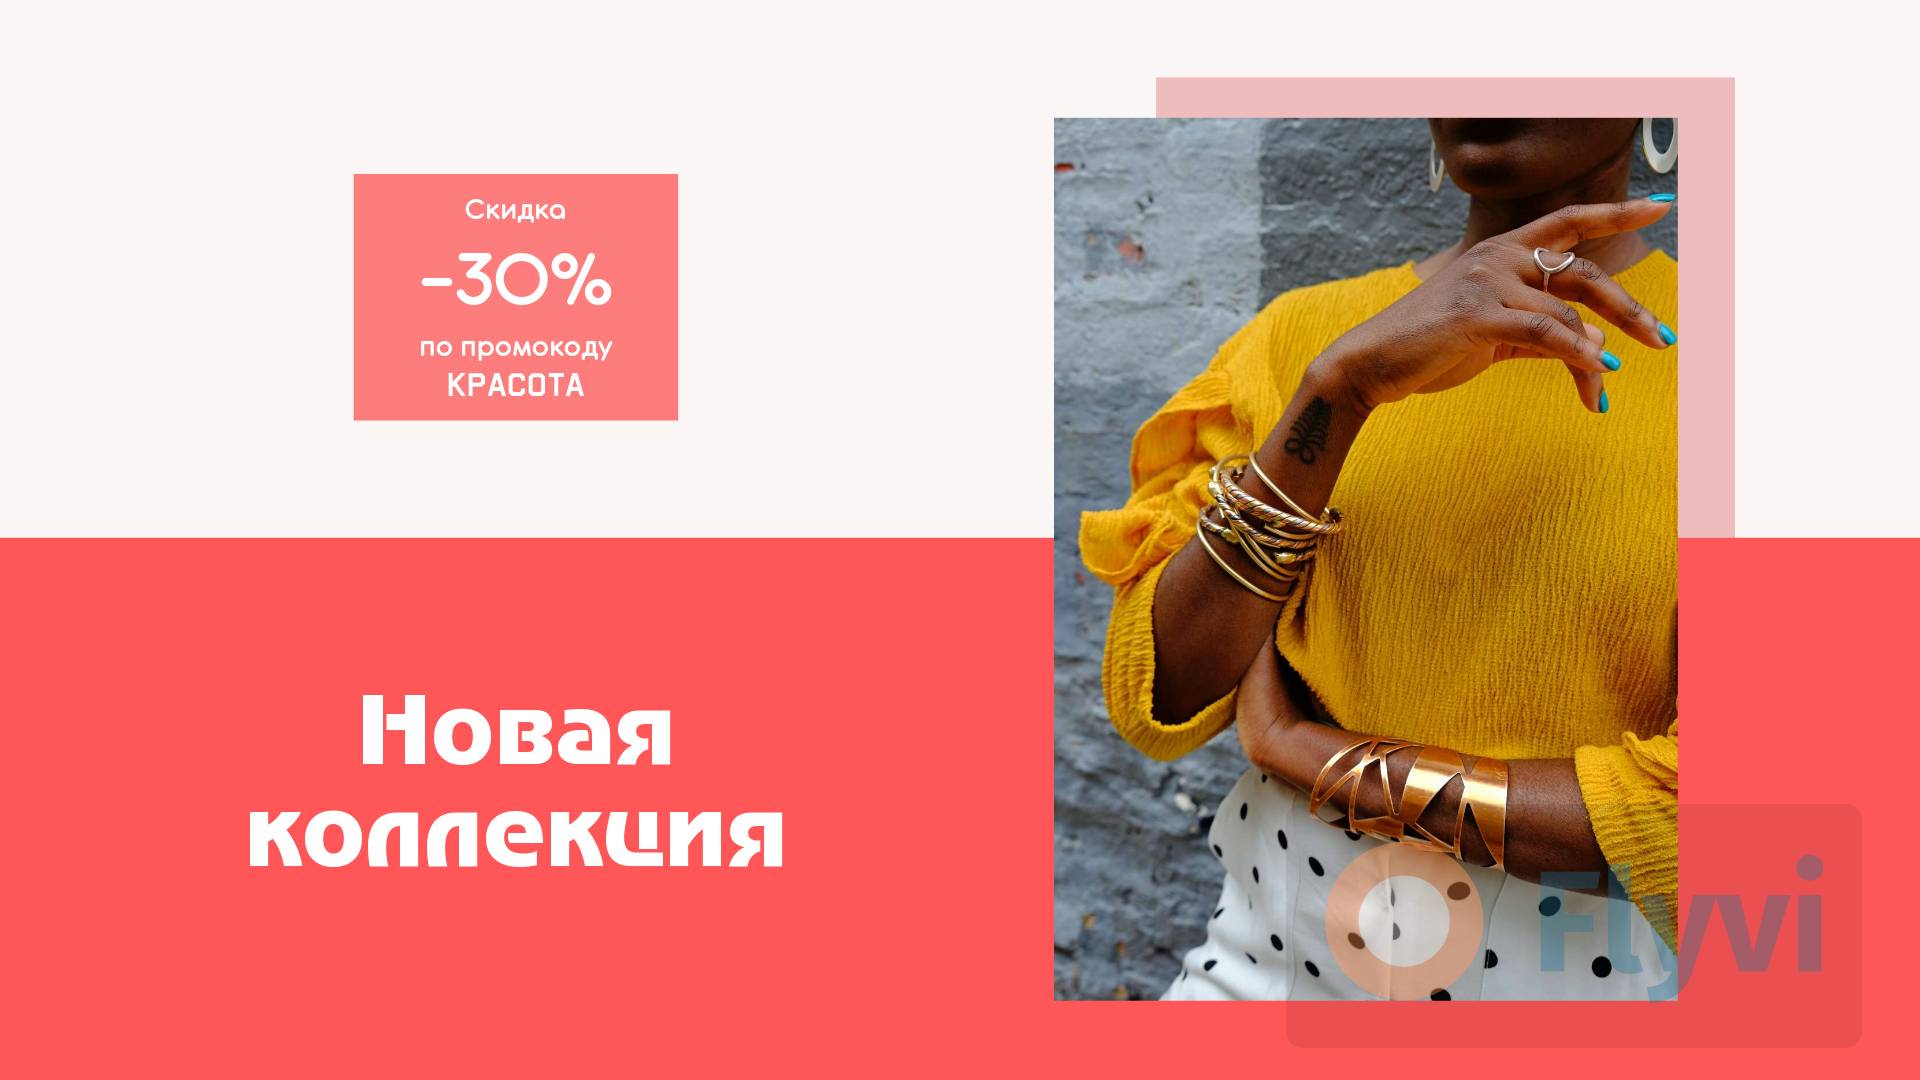 Темнокожая девушка в этнических браслетах и яркой горчичной блузке для яркой рекламы новой коллекции в соцсетях